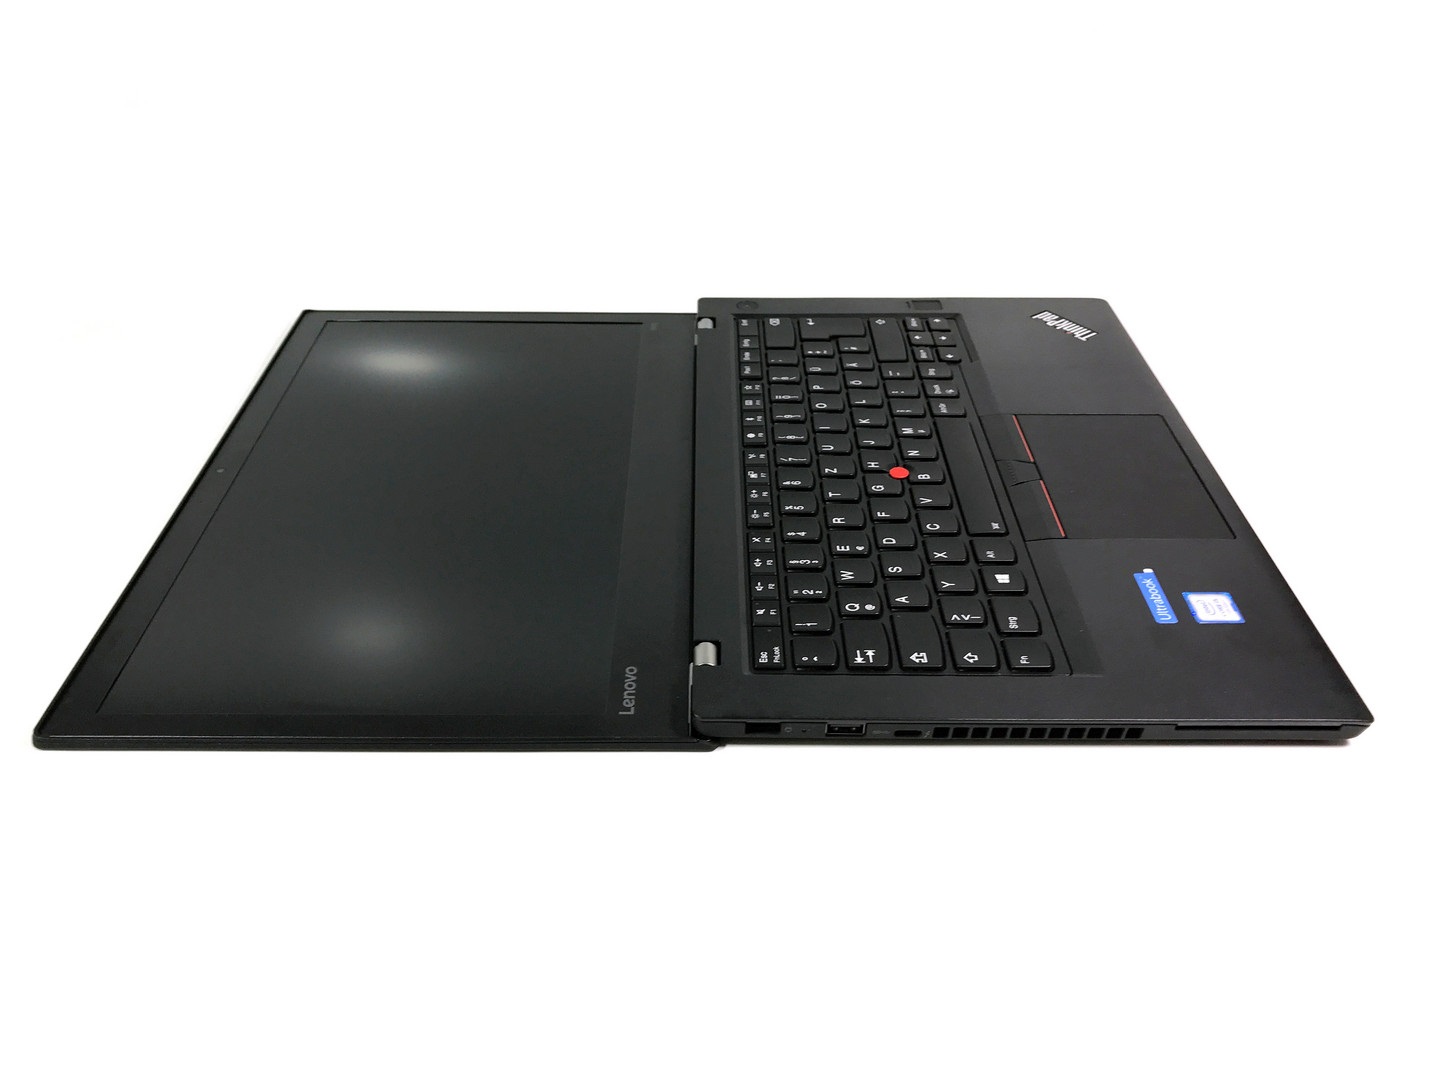 Đánh giá Laptop Thinkpad T470: Laptop Doanh nhân Đẳng cấp !, trang web tư vấn về máy tính xách tay